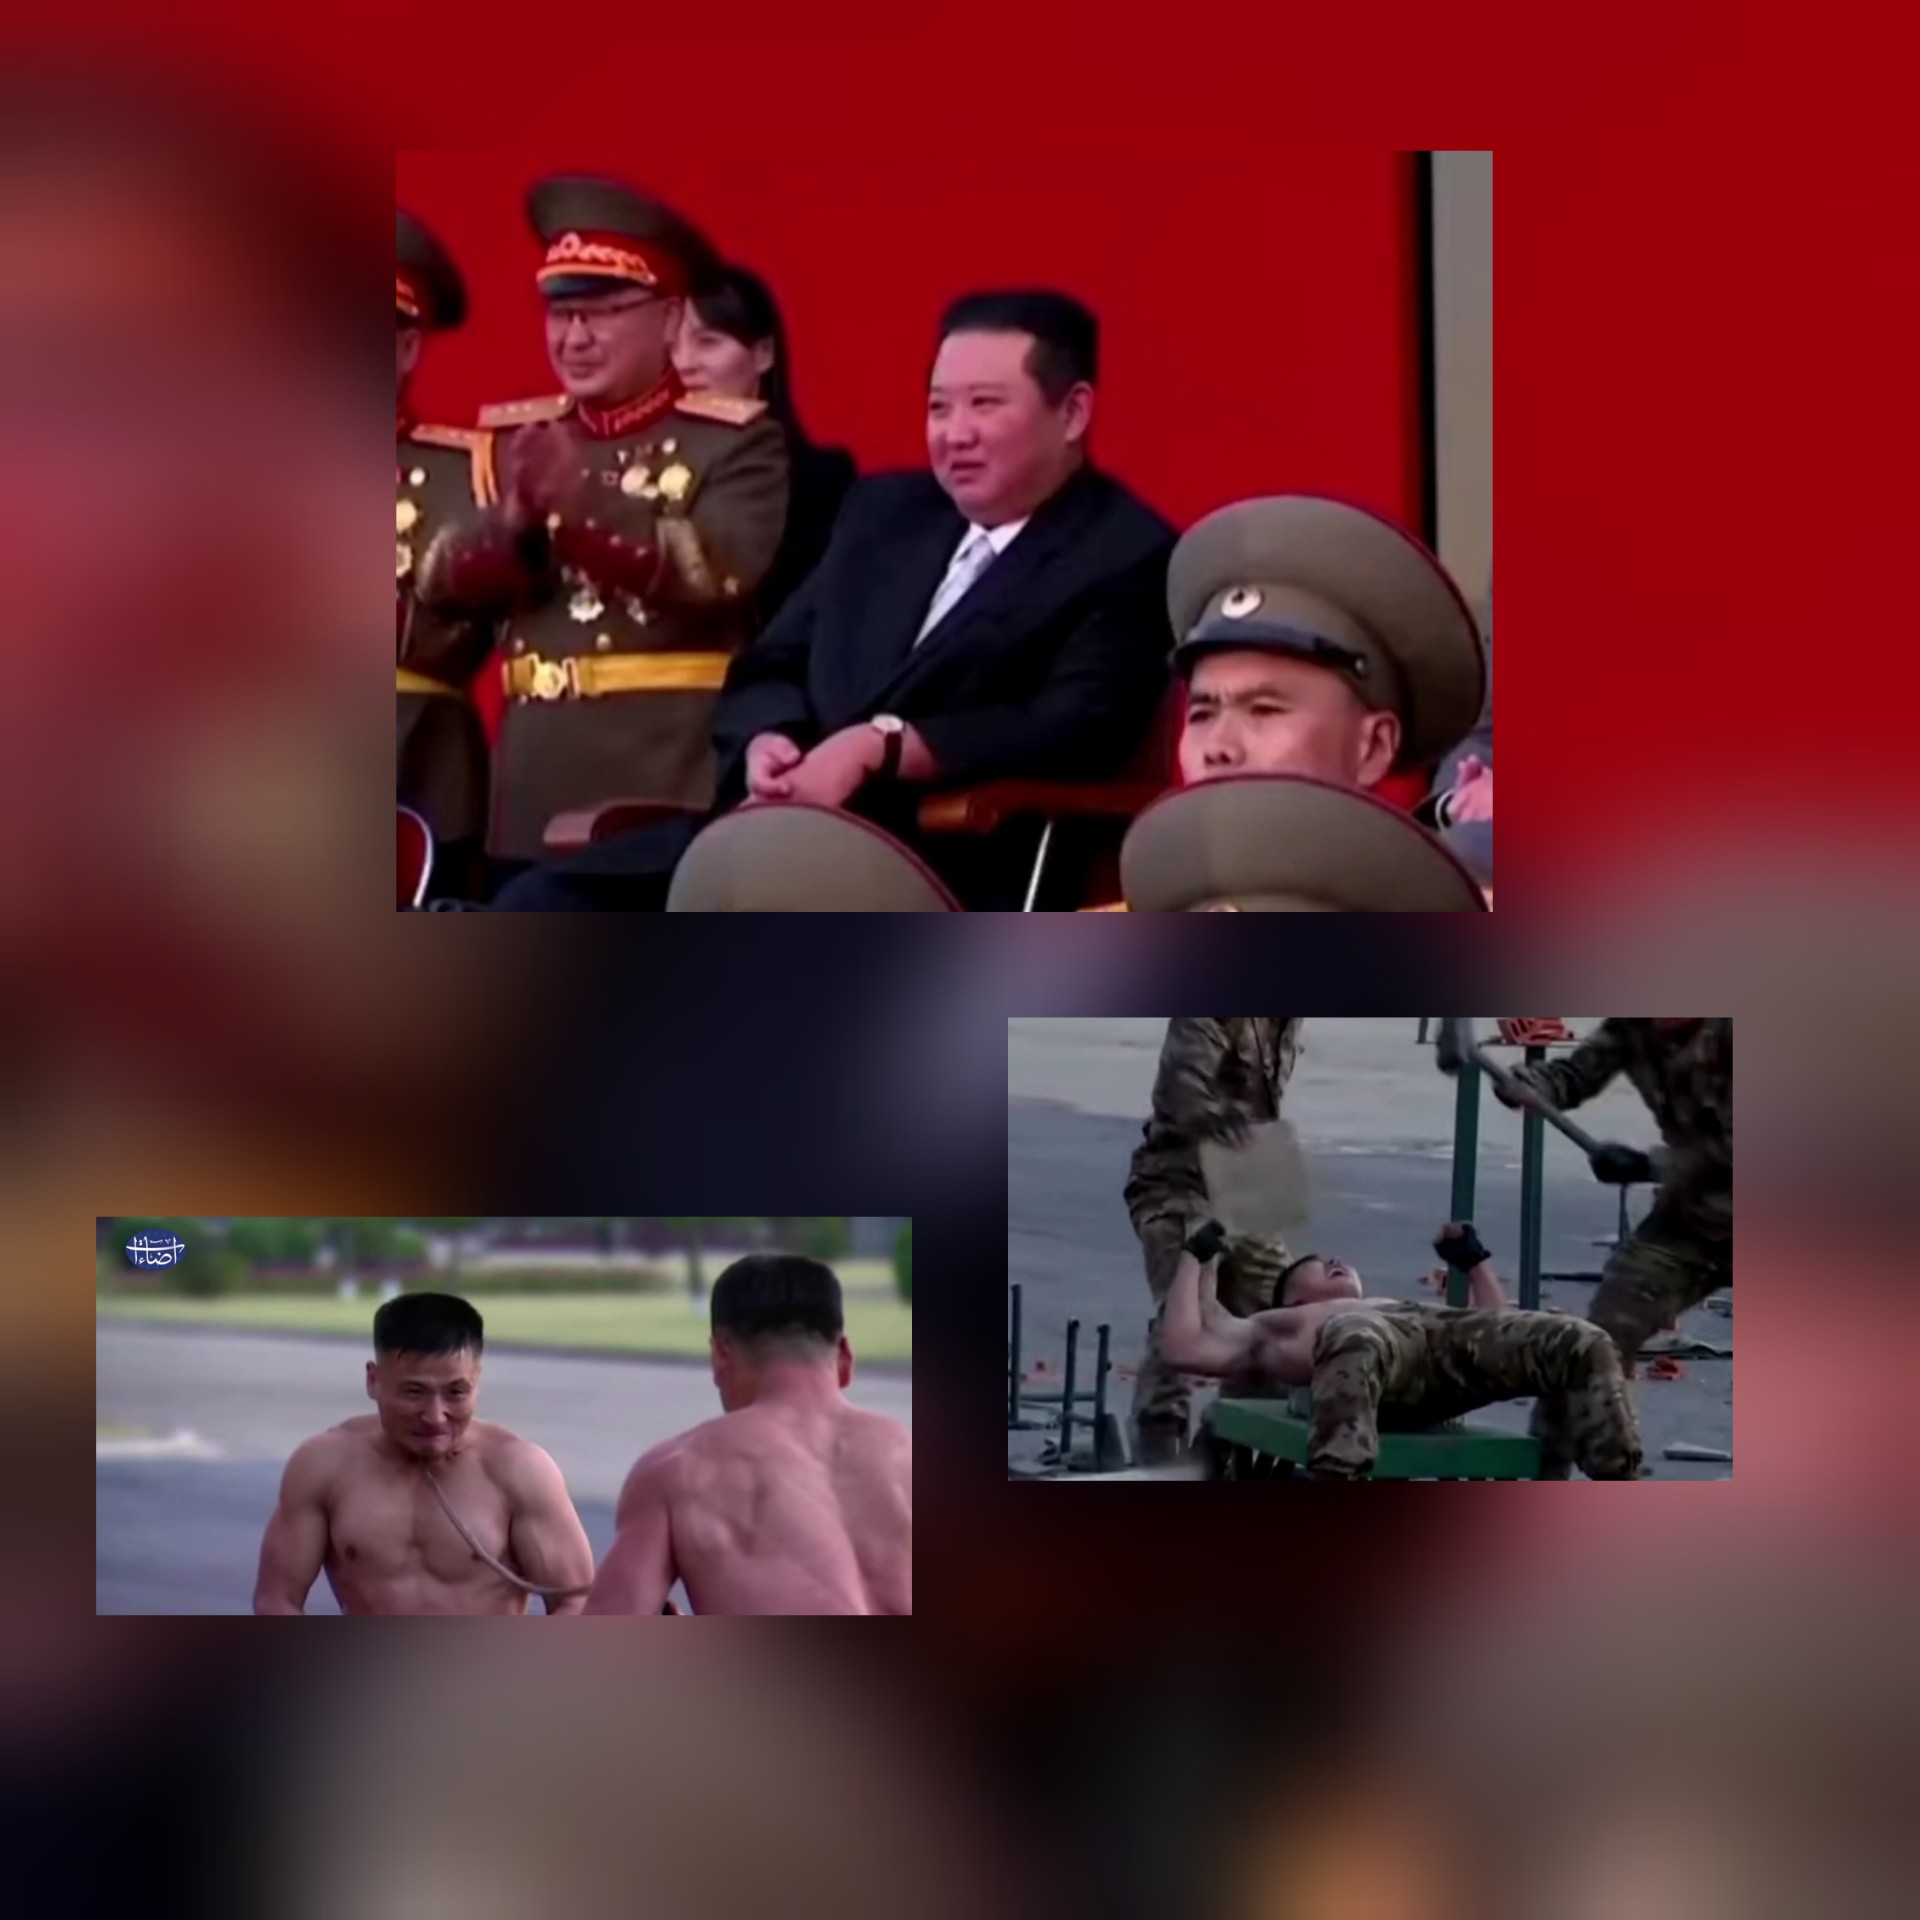 شاهد: جنود كوريا الشمالية يستعرضون أمام زعيمهم كيم يونغ أون قوتهم البدنية والقتالية